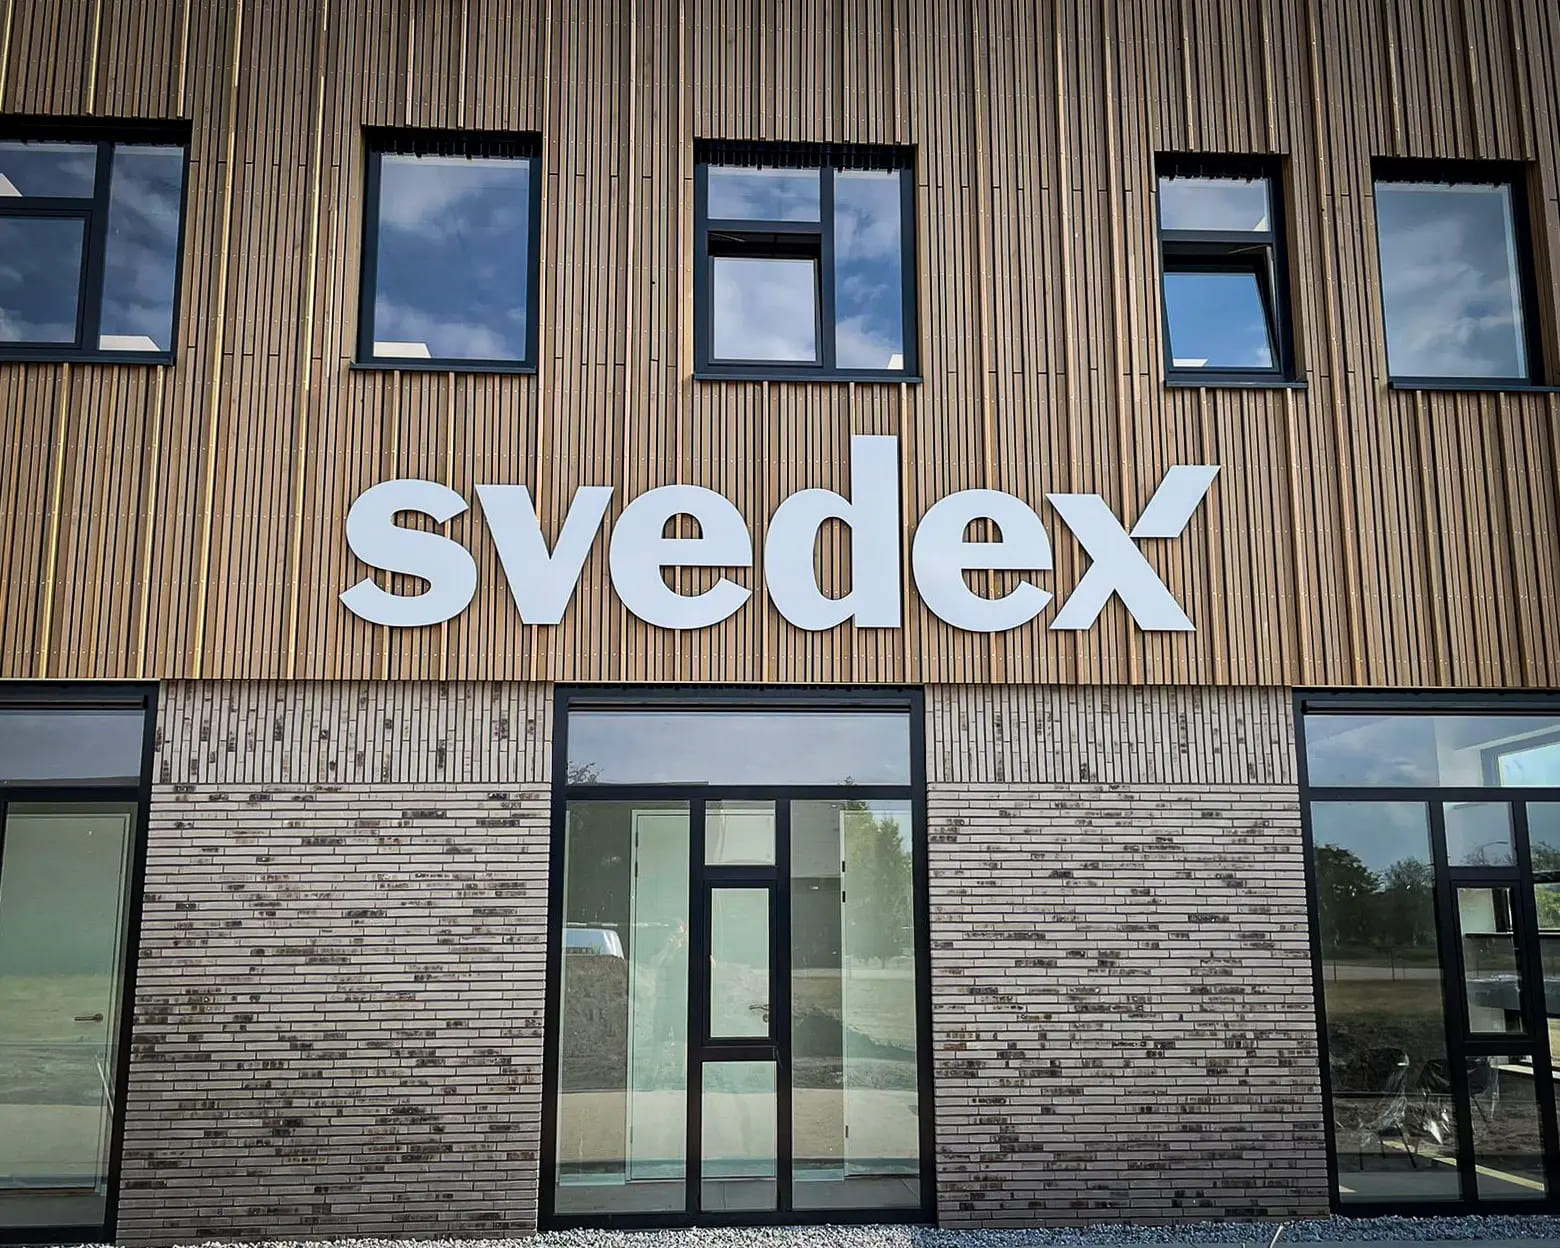 Gevelreclame voor Svedex door Mull2media